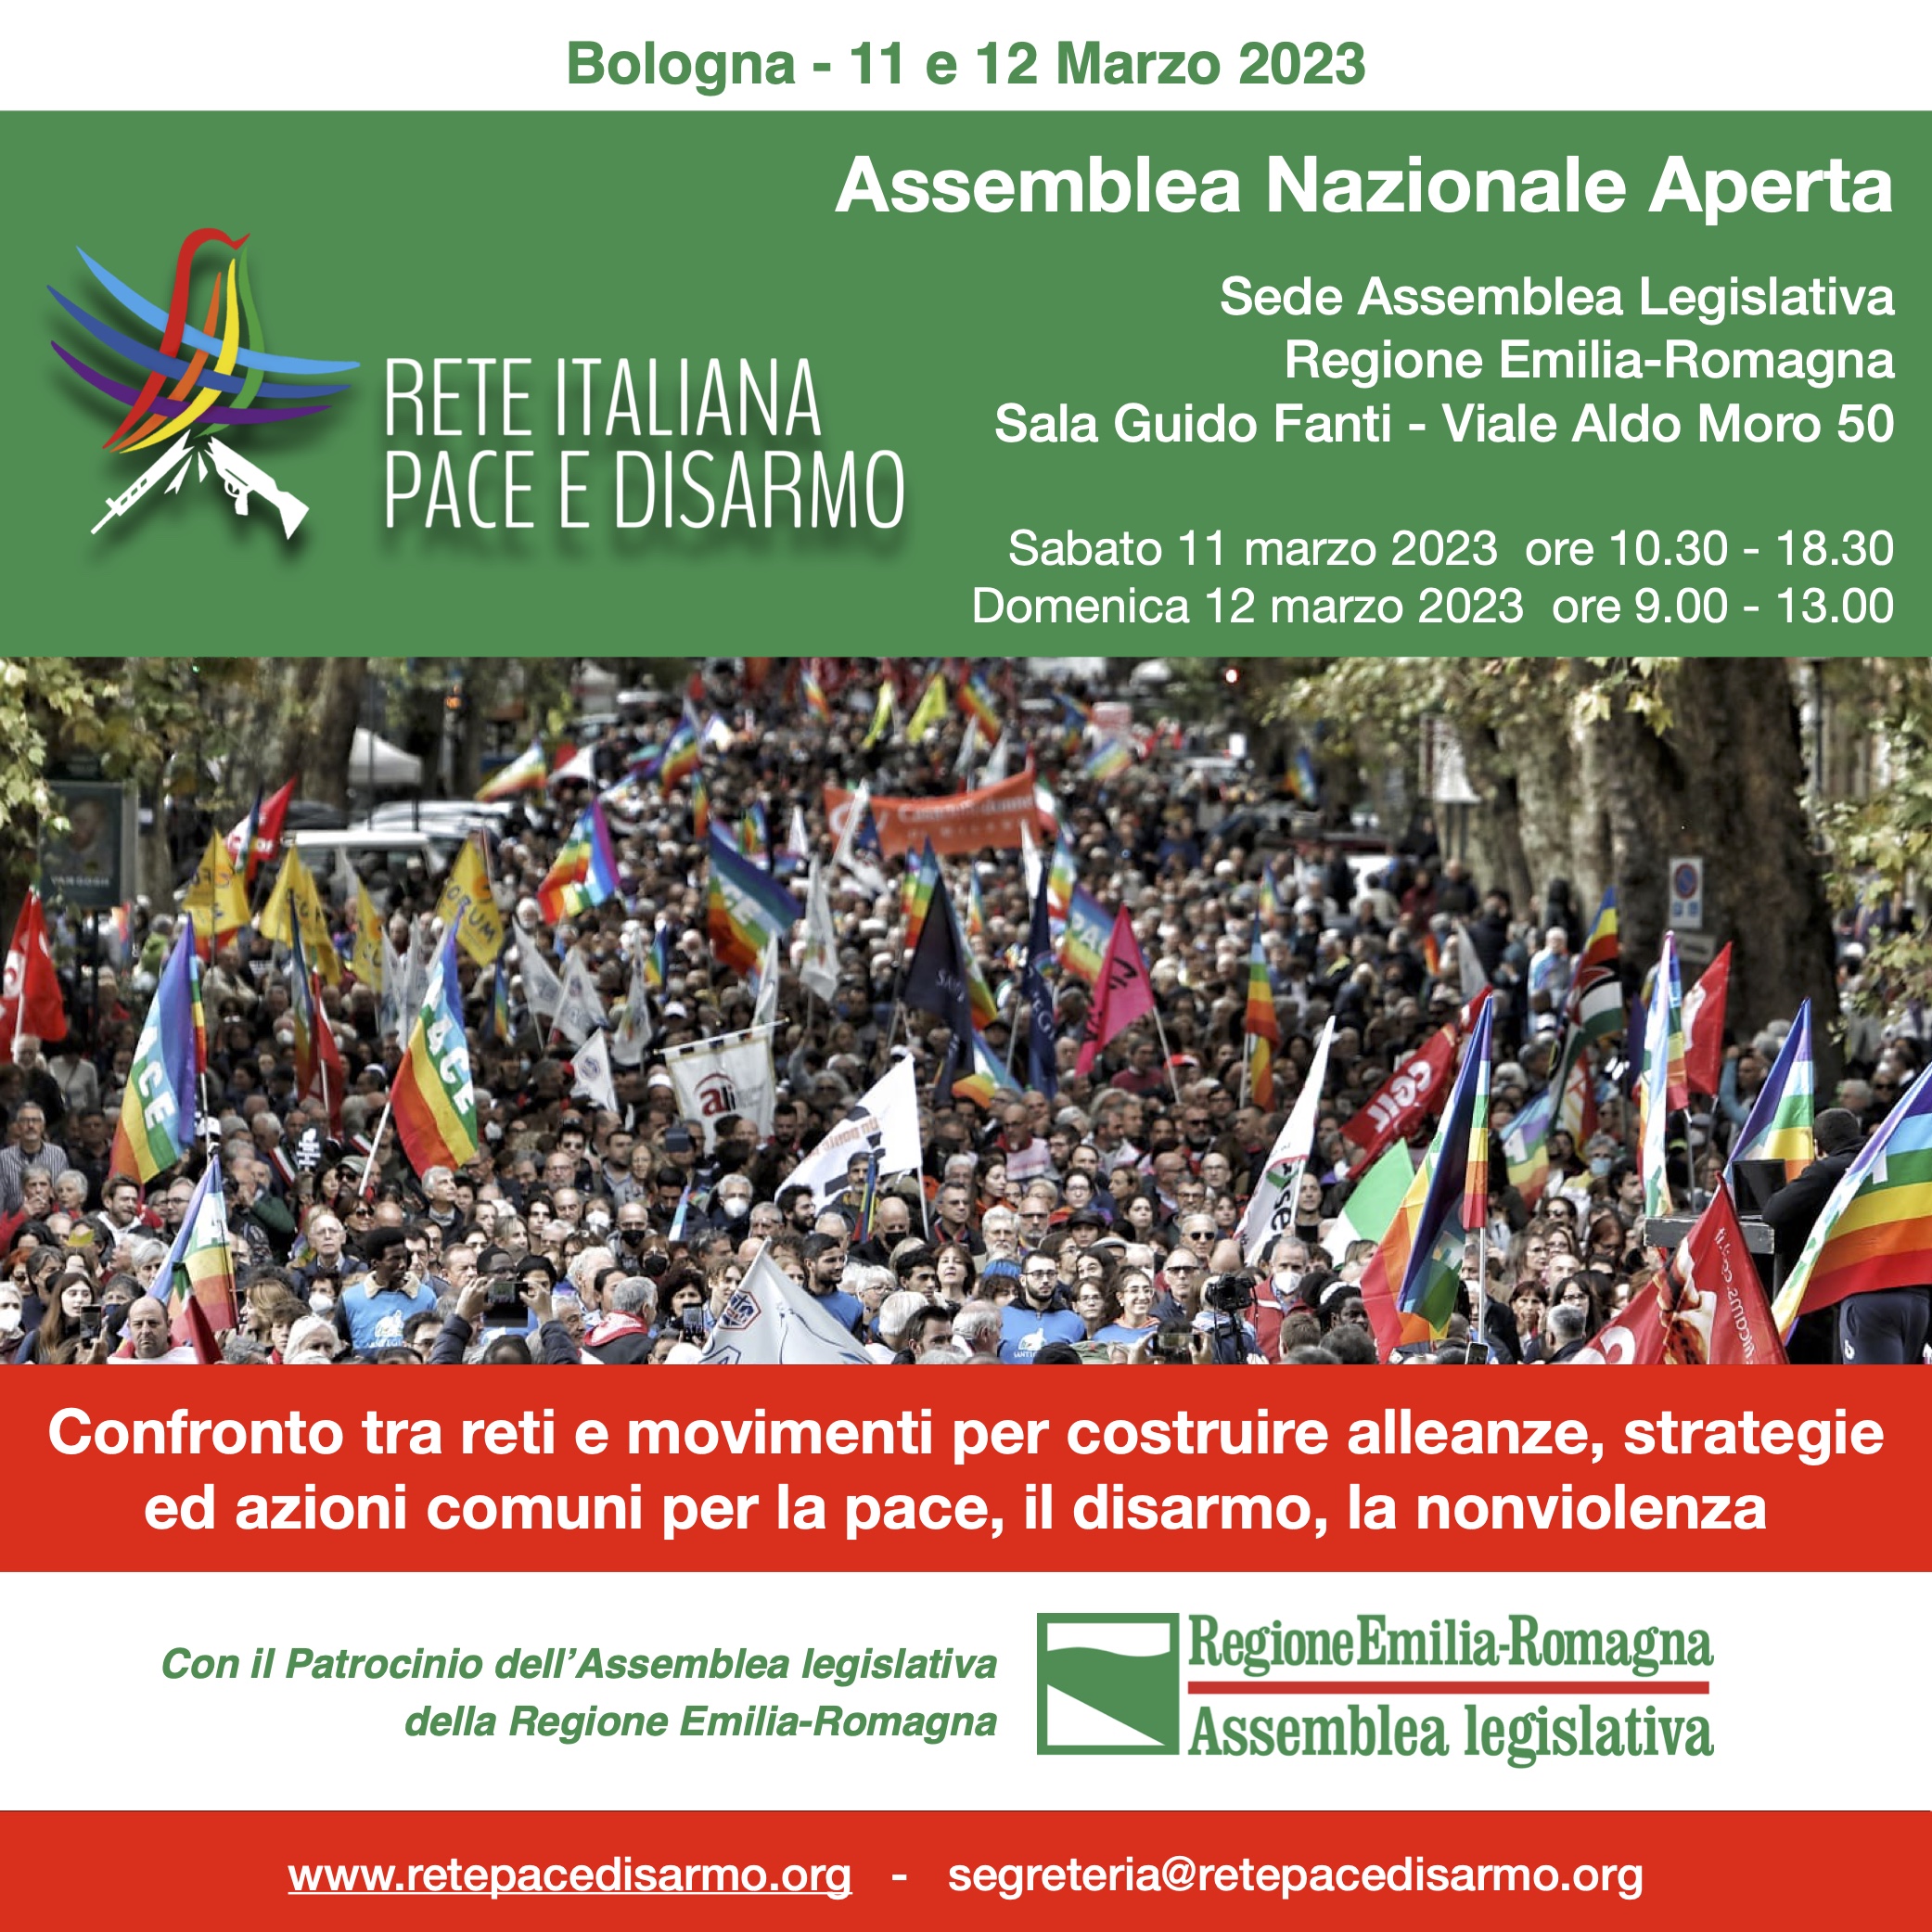 Assemblea 2023 della Rete Italiana Pace e Disarmo: continuano le campagne e il lavoro collettivo per la Pace